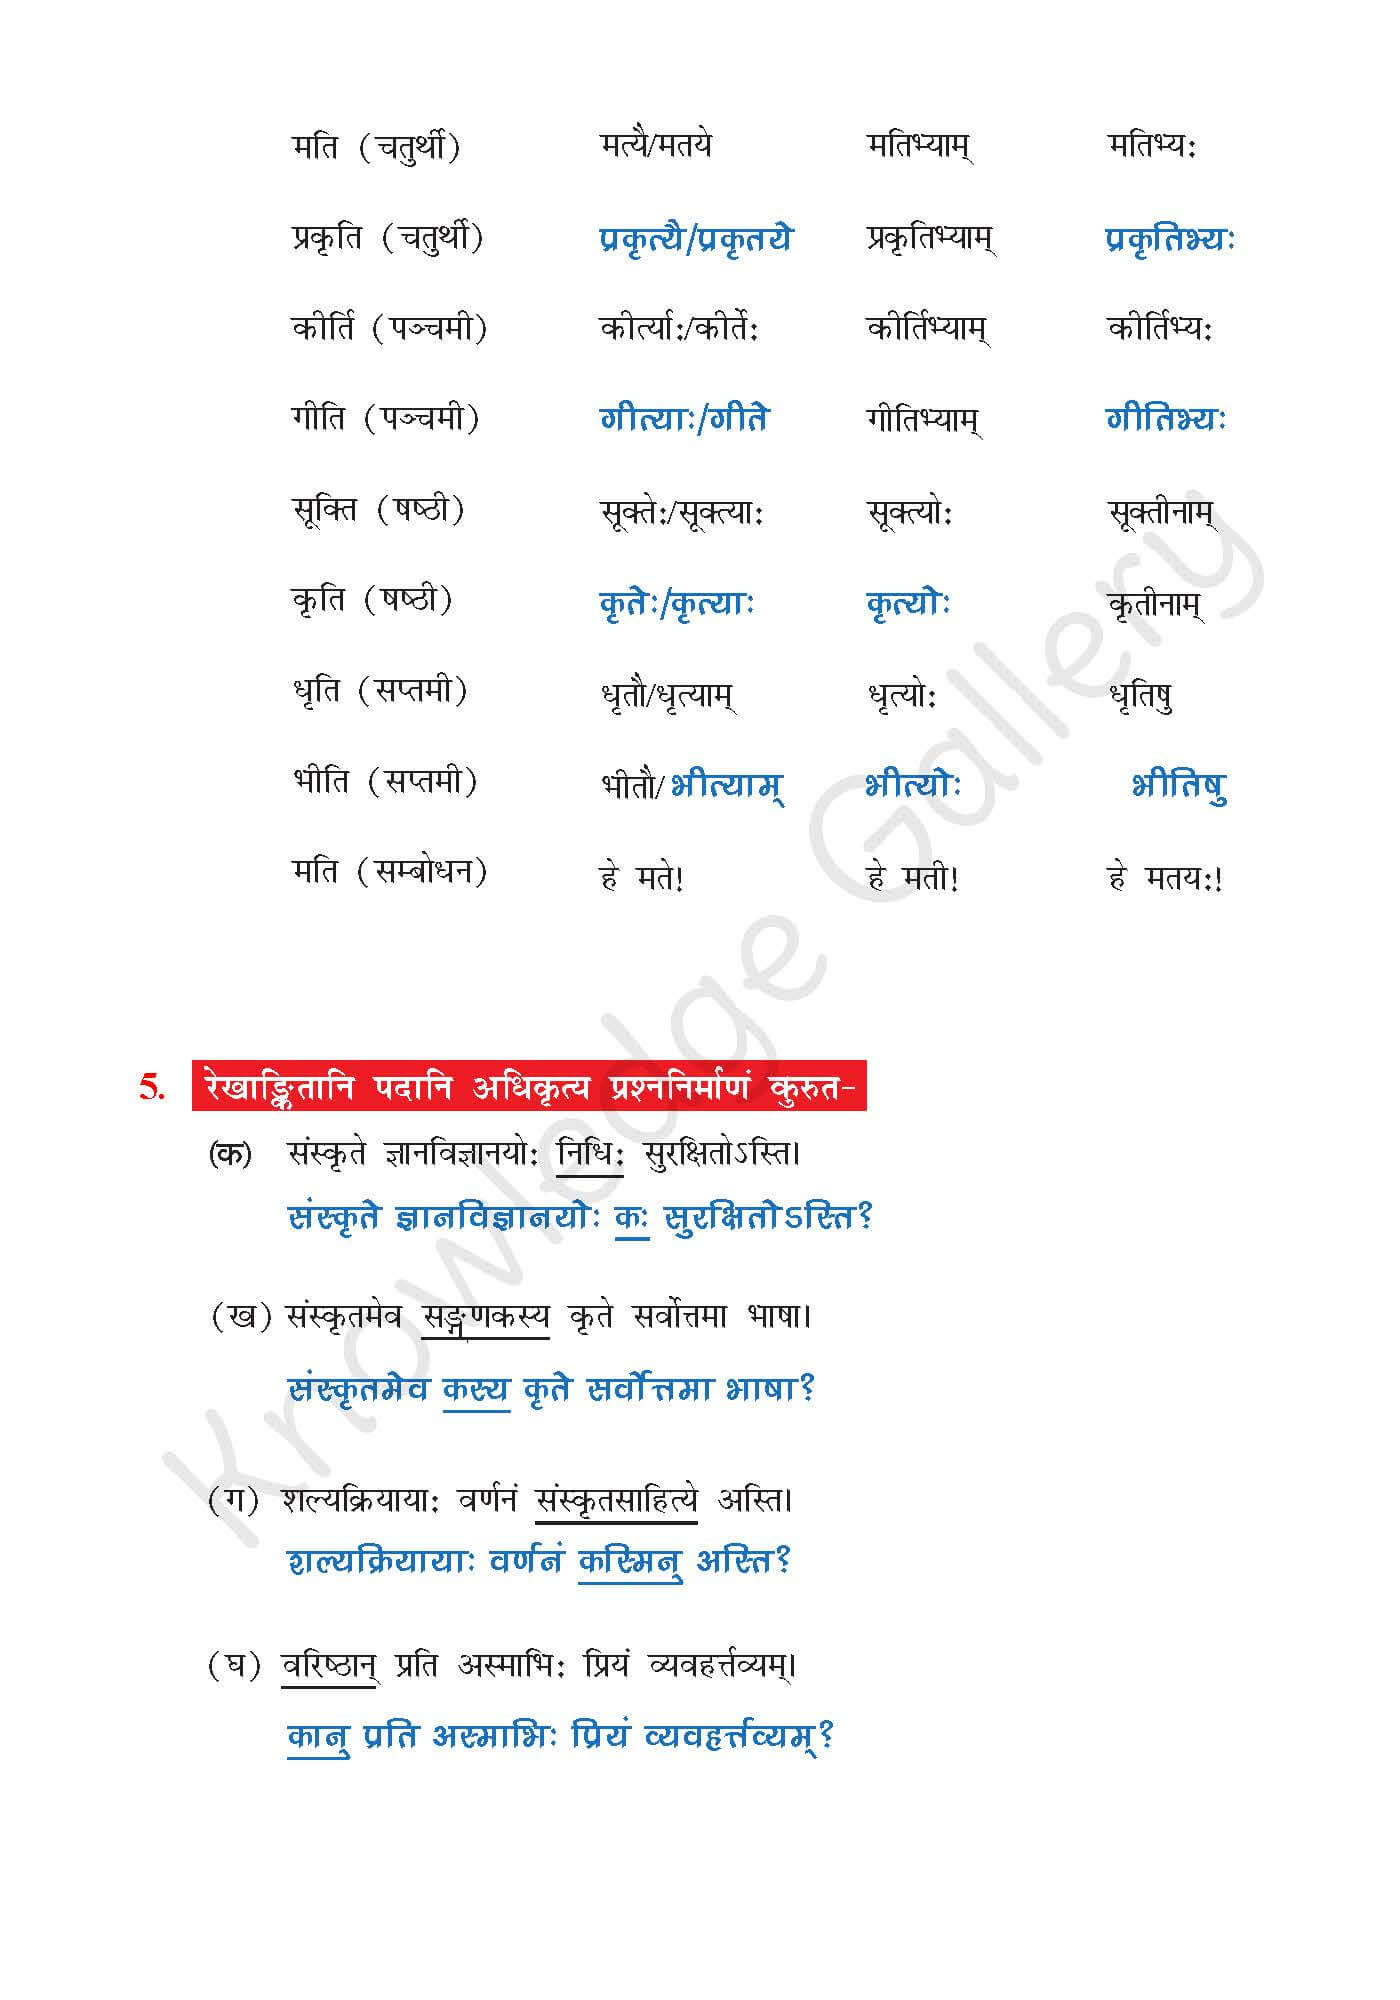 NCERT Solution For Class 7 Sanskrit Chapter 12 part 5